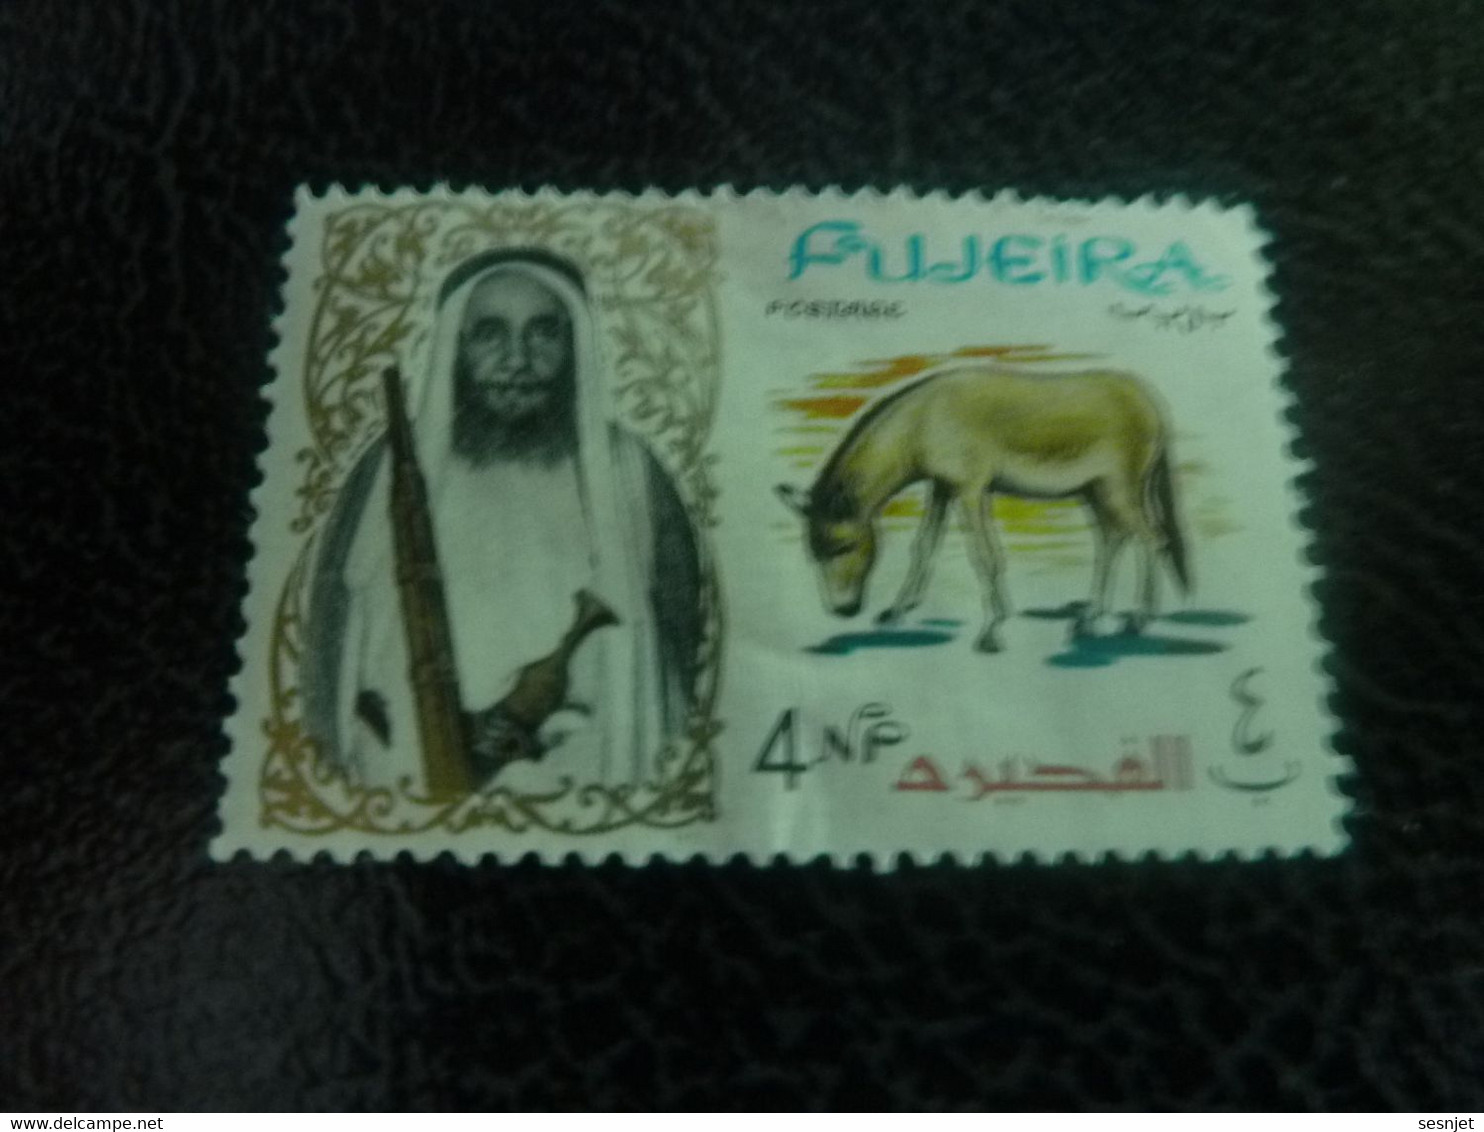 Fujeira - Sultan - Mule - Val 4 Np - Postage - Multicolore - Non Oblitéré - Année 1965 - - Asini